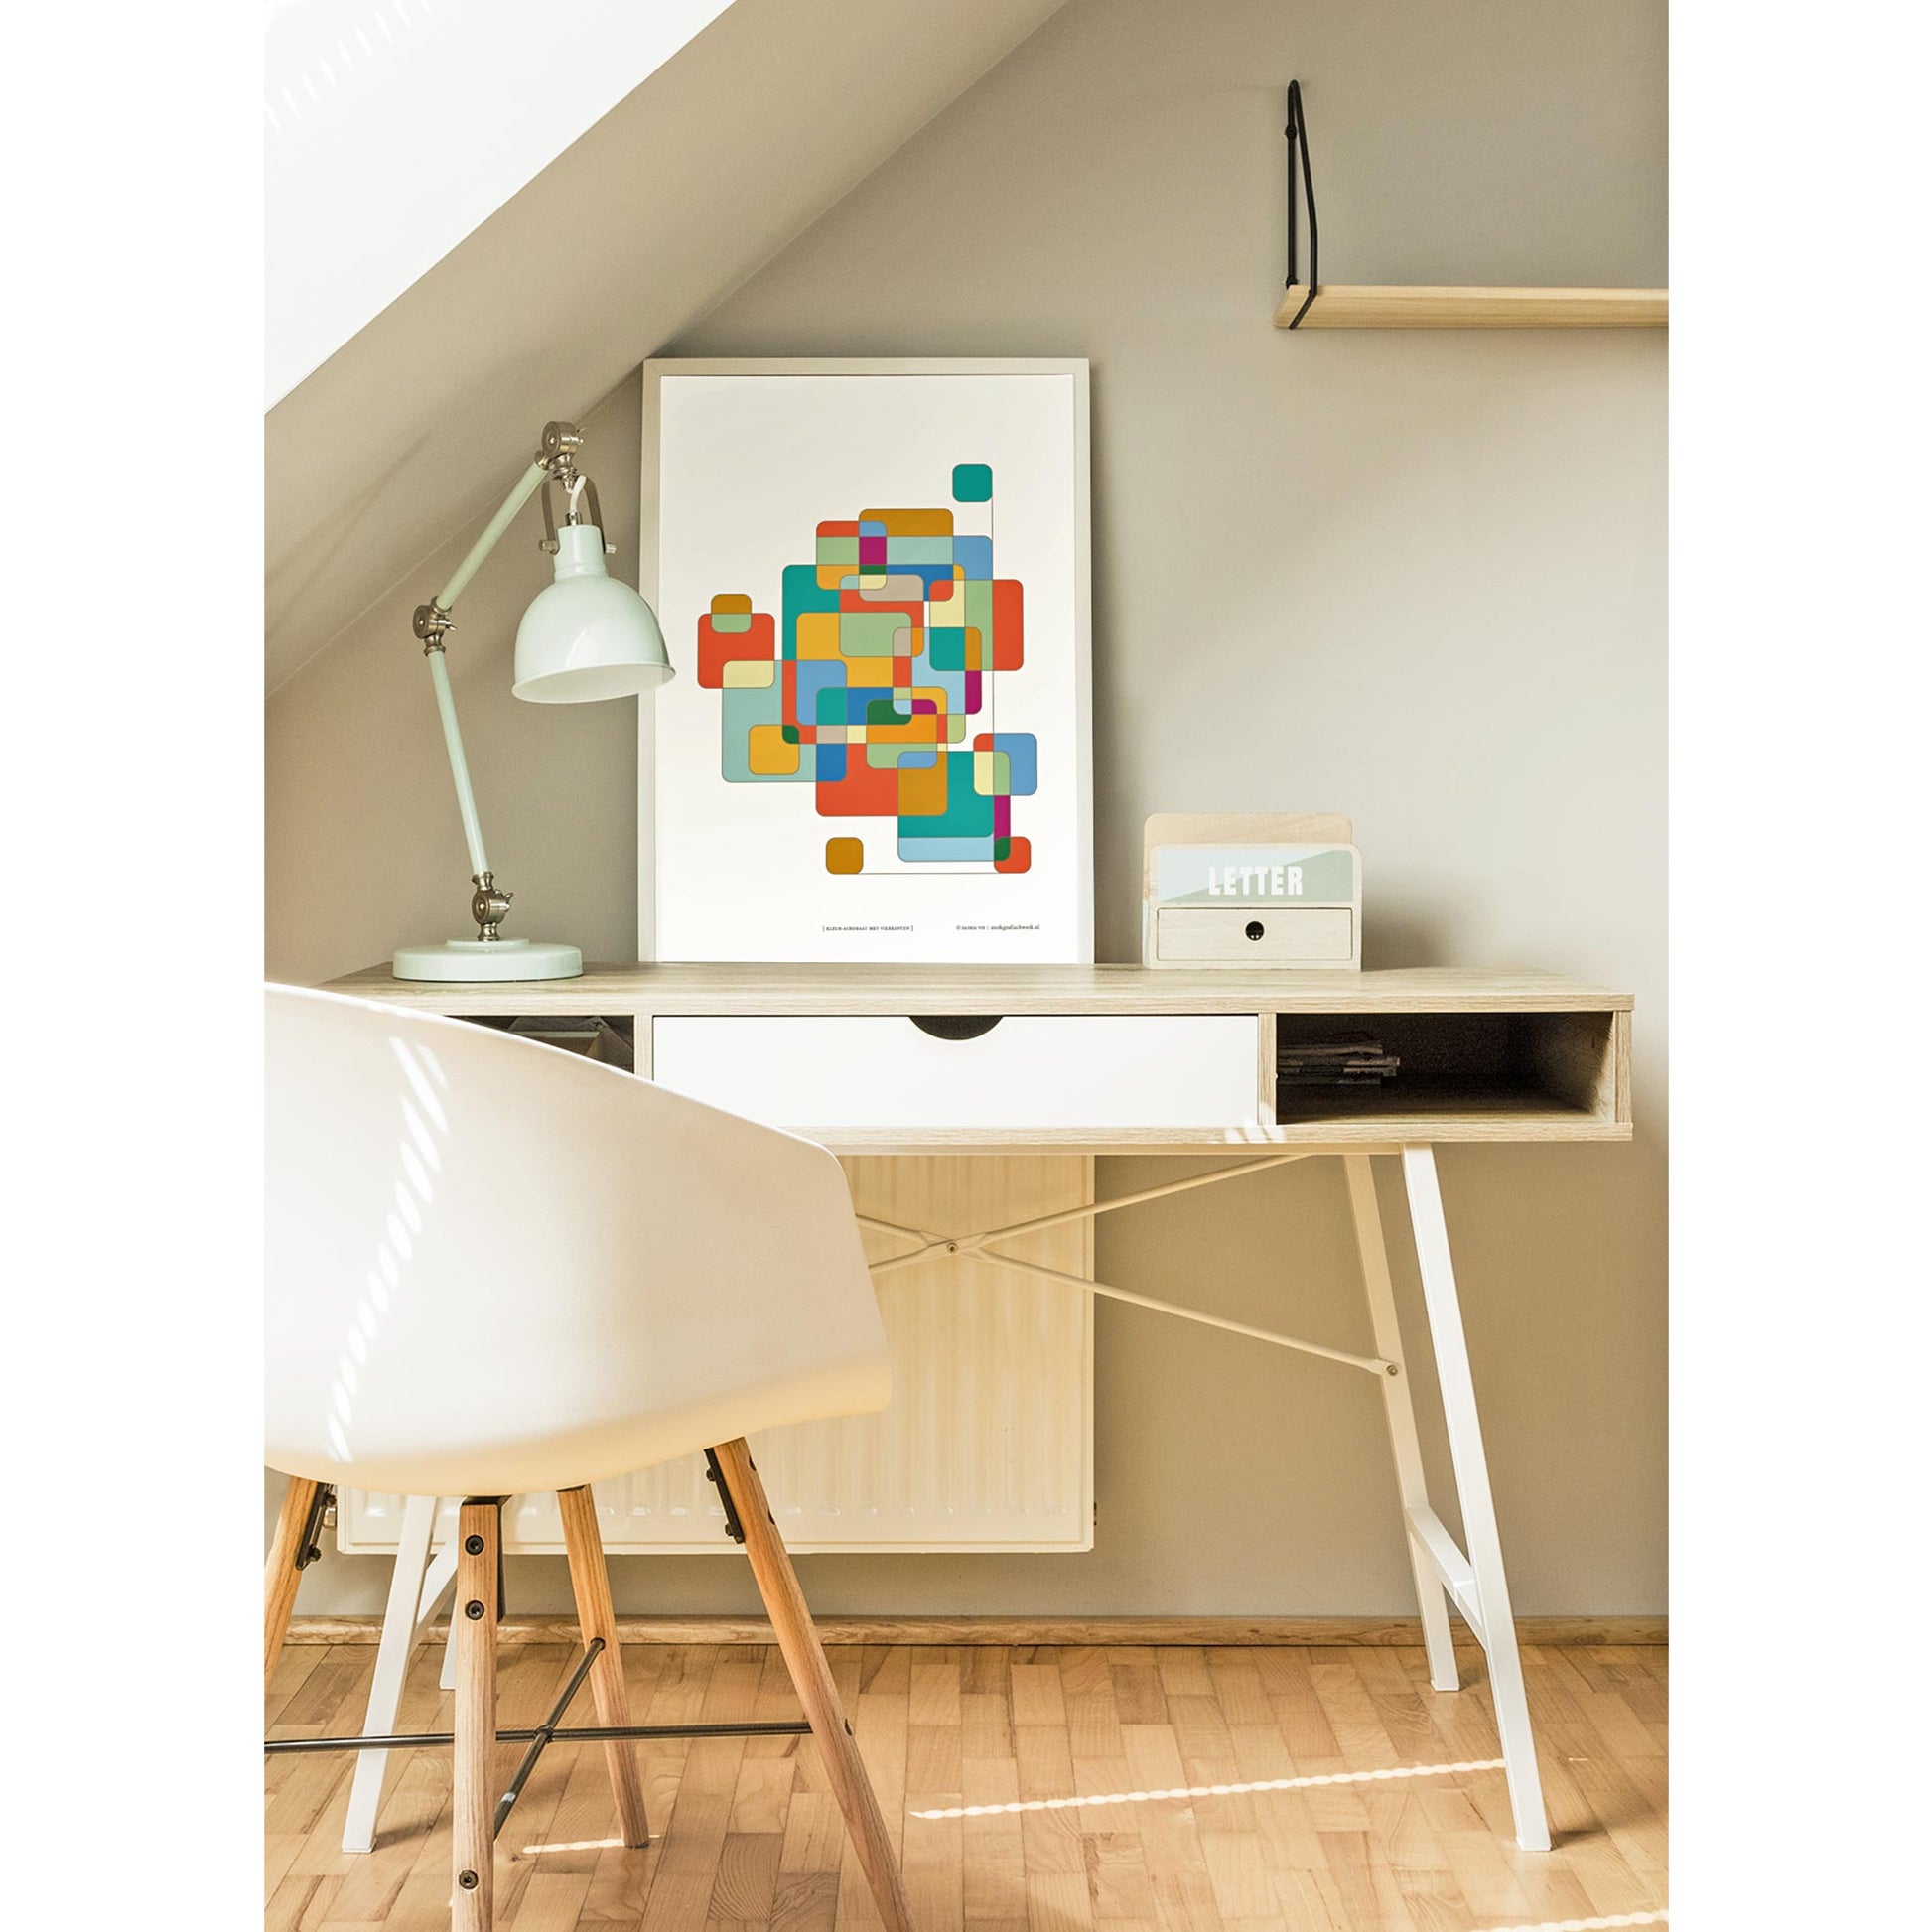 Productafbeelding poster "kleur-acrobaat met ronde rechthoeken" 2de impressie staande op een tafel in een interieur